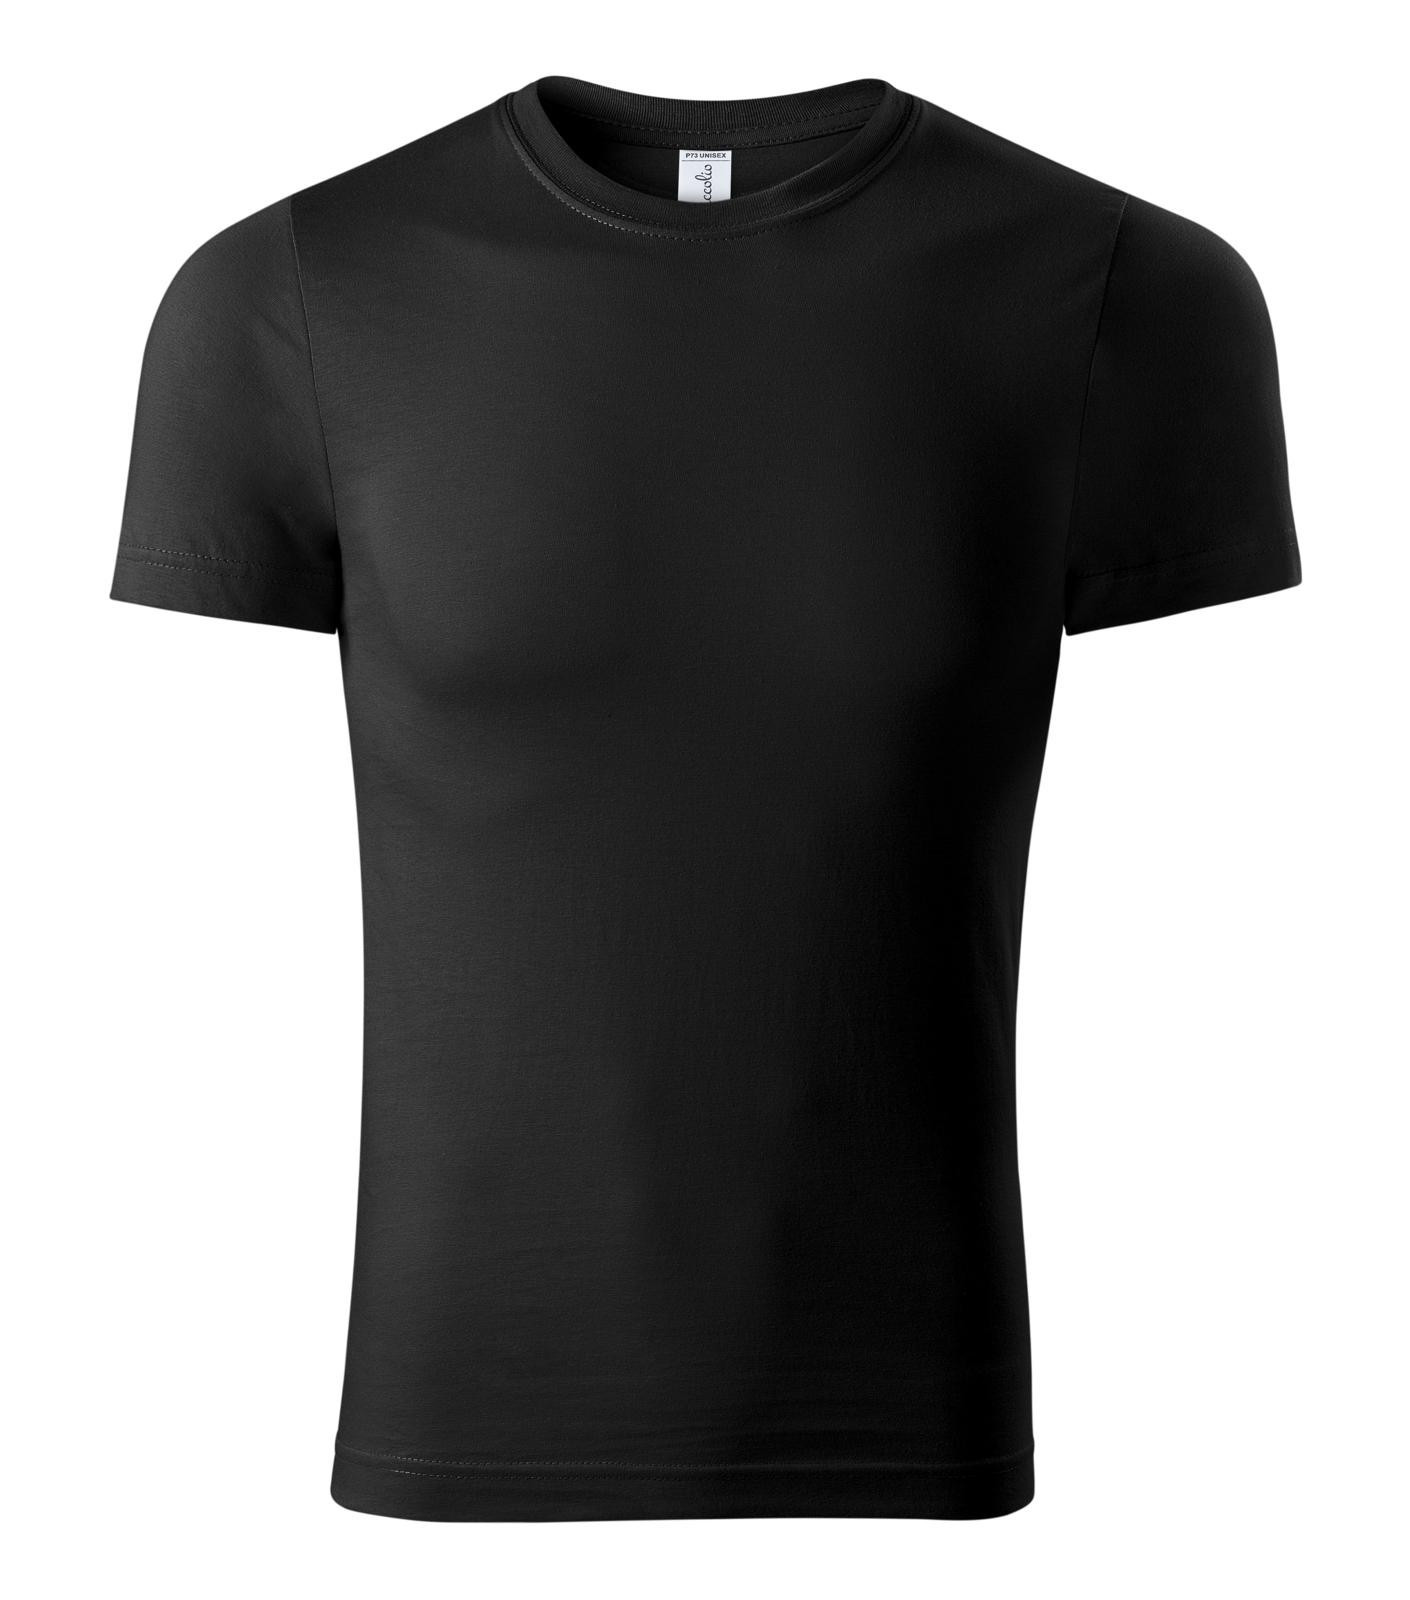 Unisex tričko Piccolio Paint P73 - veľkosť: L, farba: čierna